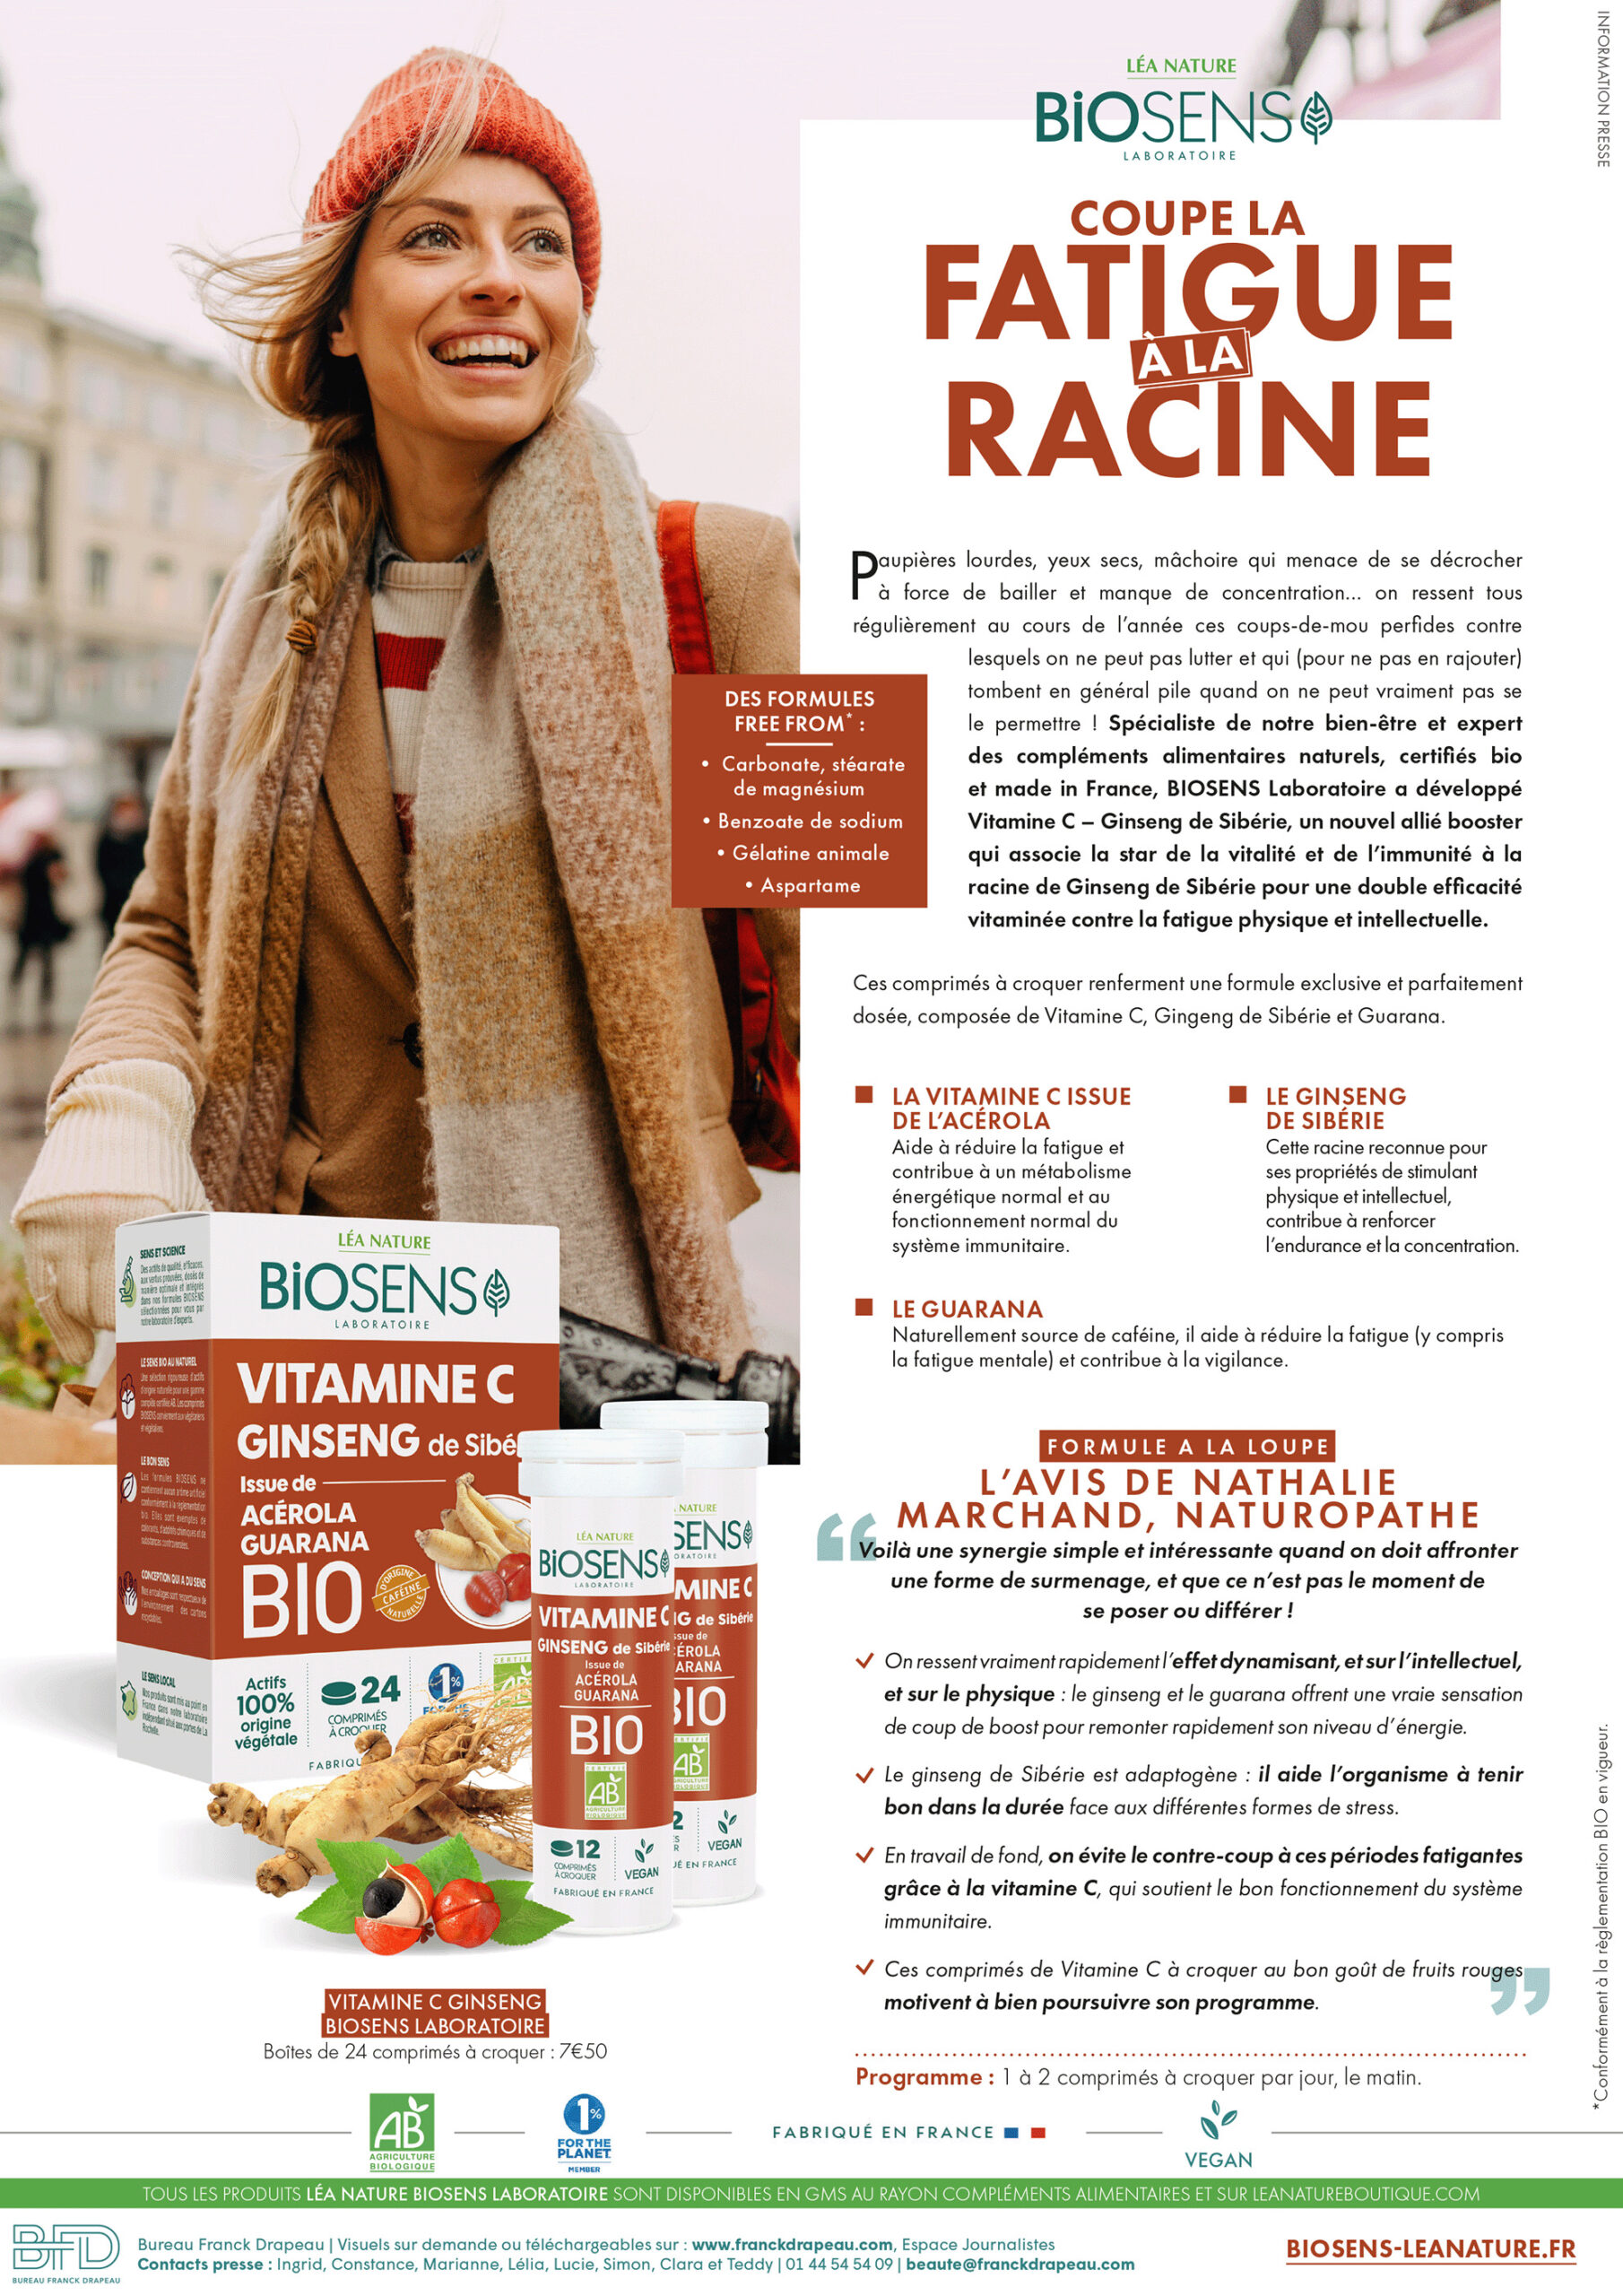 Biosens Laboratoire | Vitamine C Ginseng